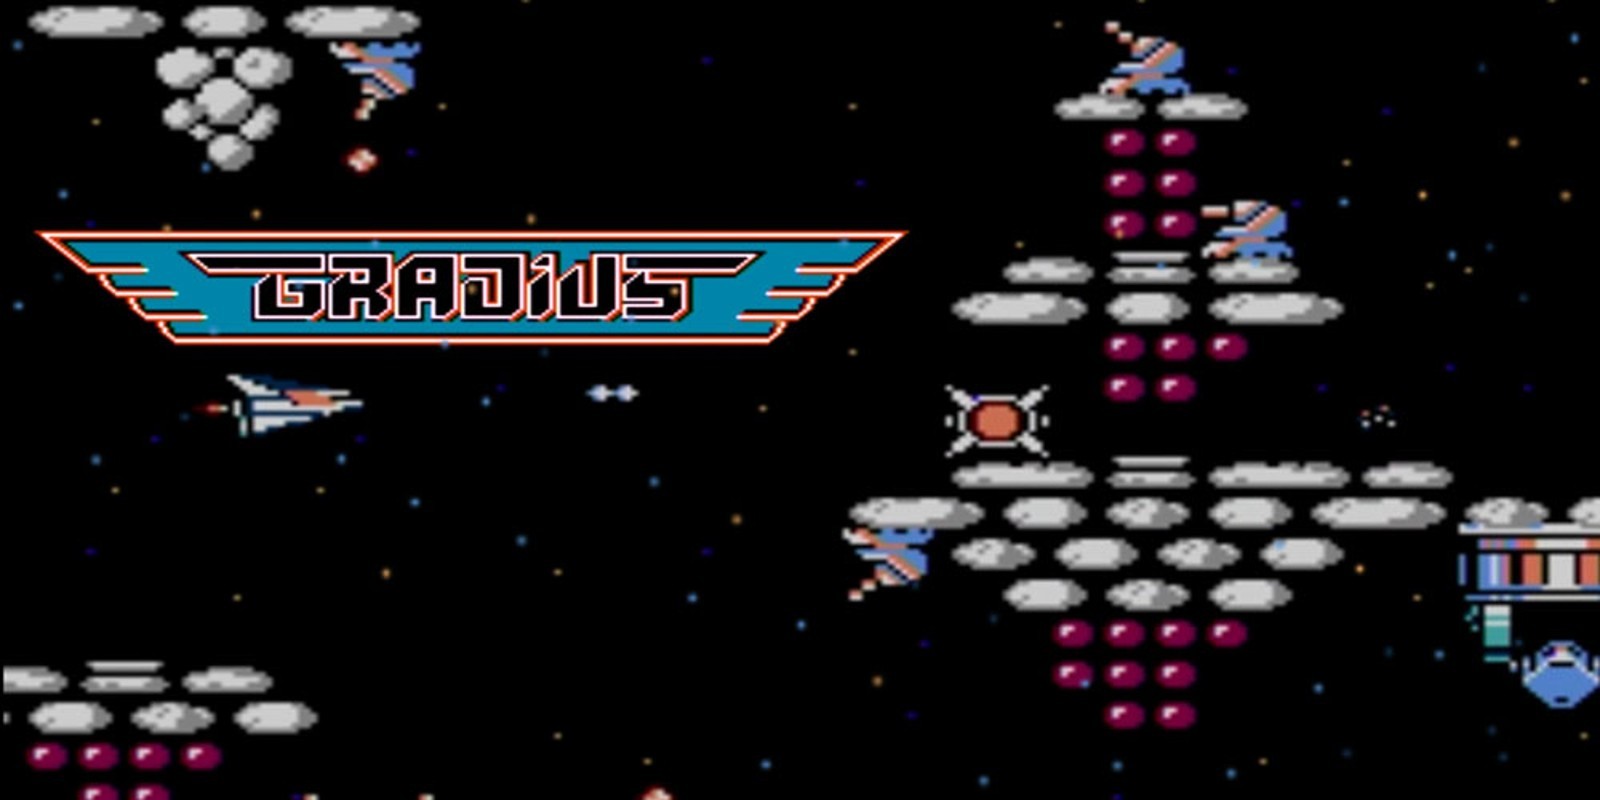 Gradius II полное прохождение со взломом на бафы Dendy Денди NES Nintendo Famicom